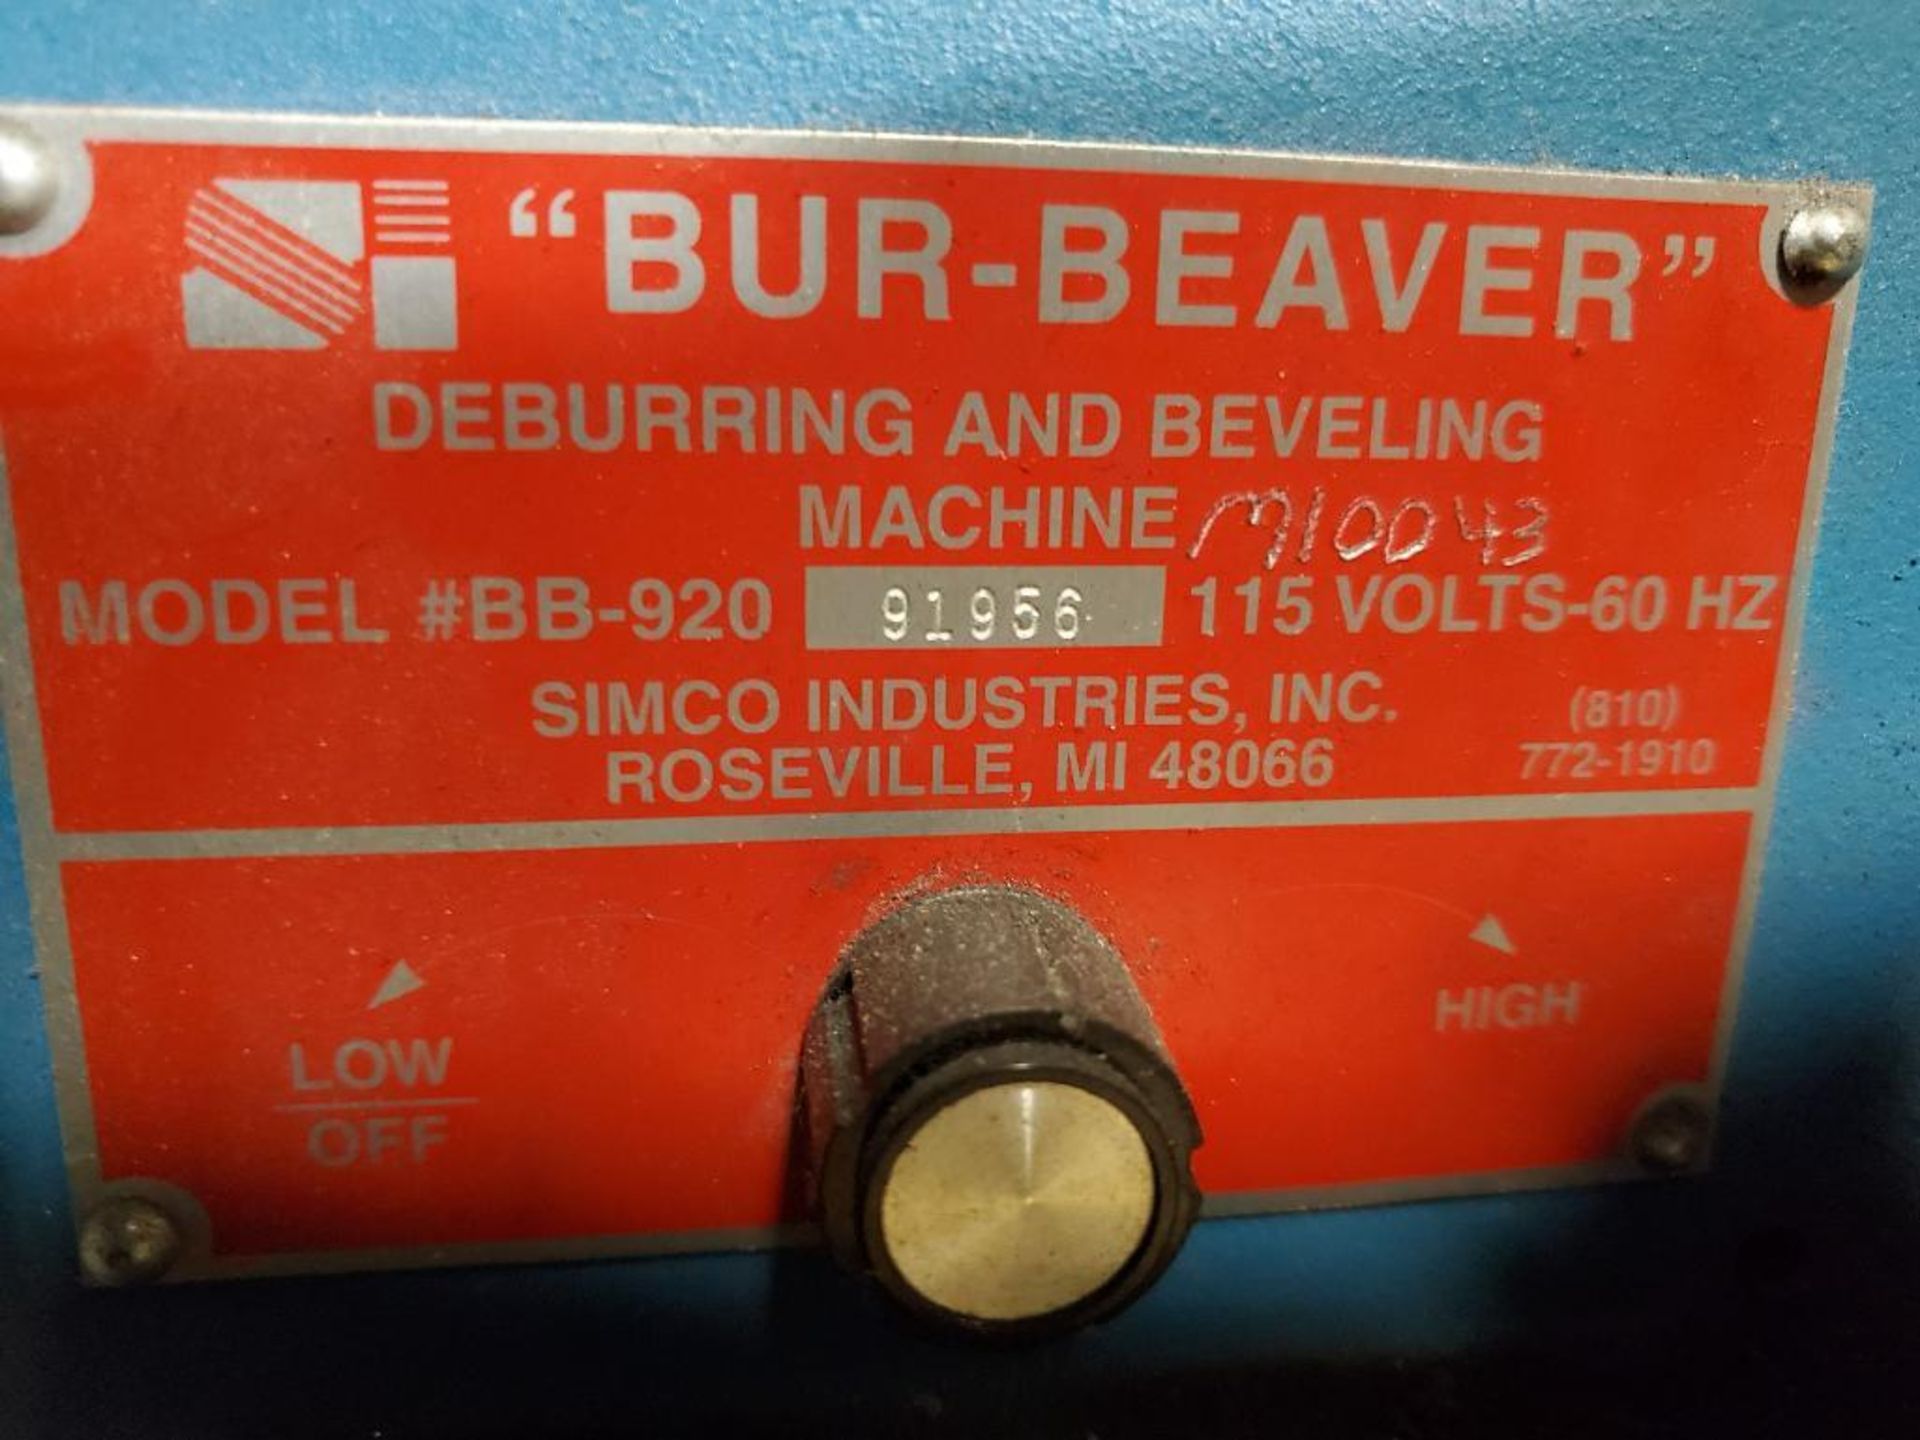 Bur-Beaver Deburring & Beveling Machine, Model BB-920, s/n 91956, 115v/60hz - Image 5 of 5